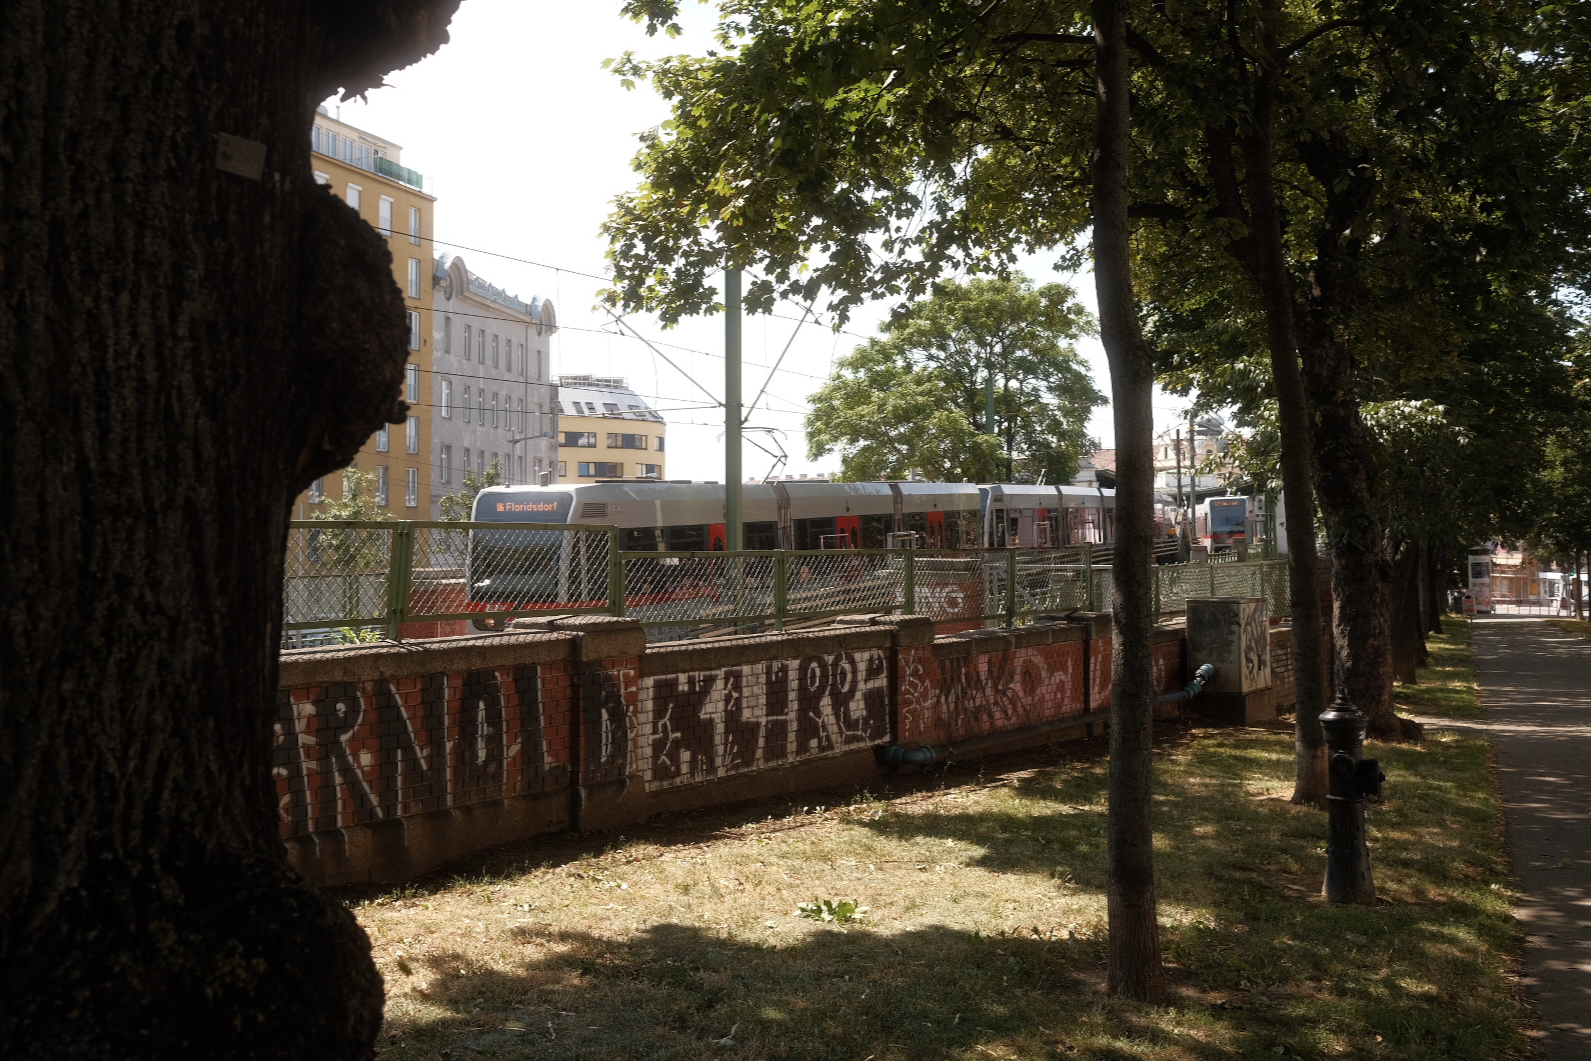 Wien – Interrail 2022